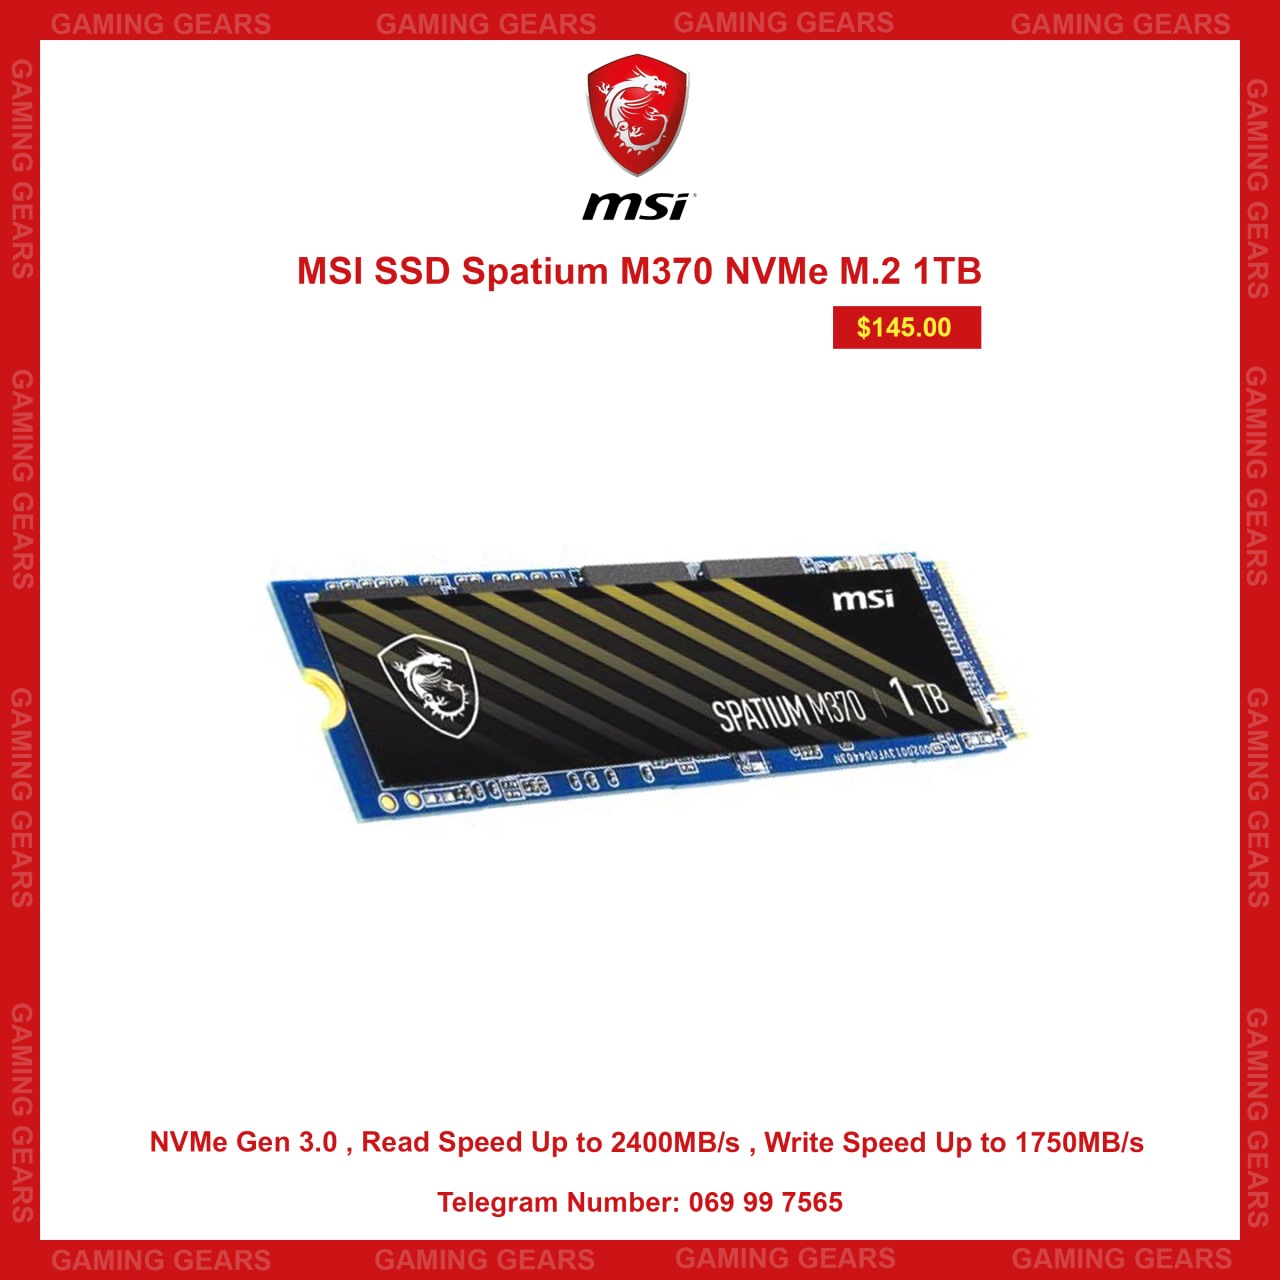 MSI SSD Spatium M370 NVMe M.2 1TB